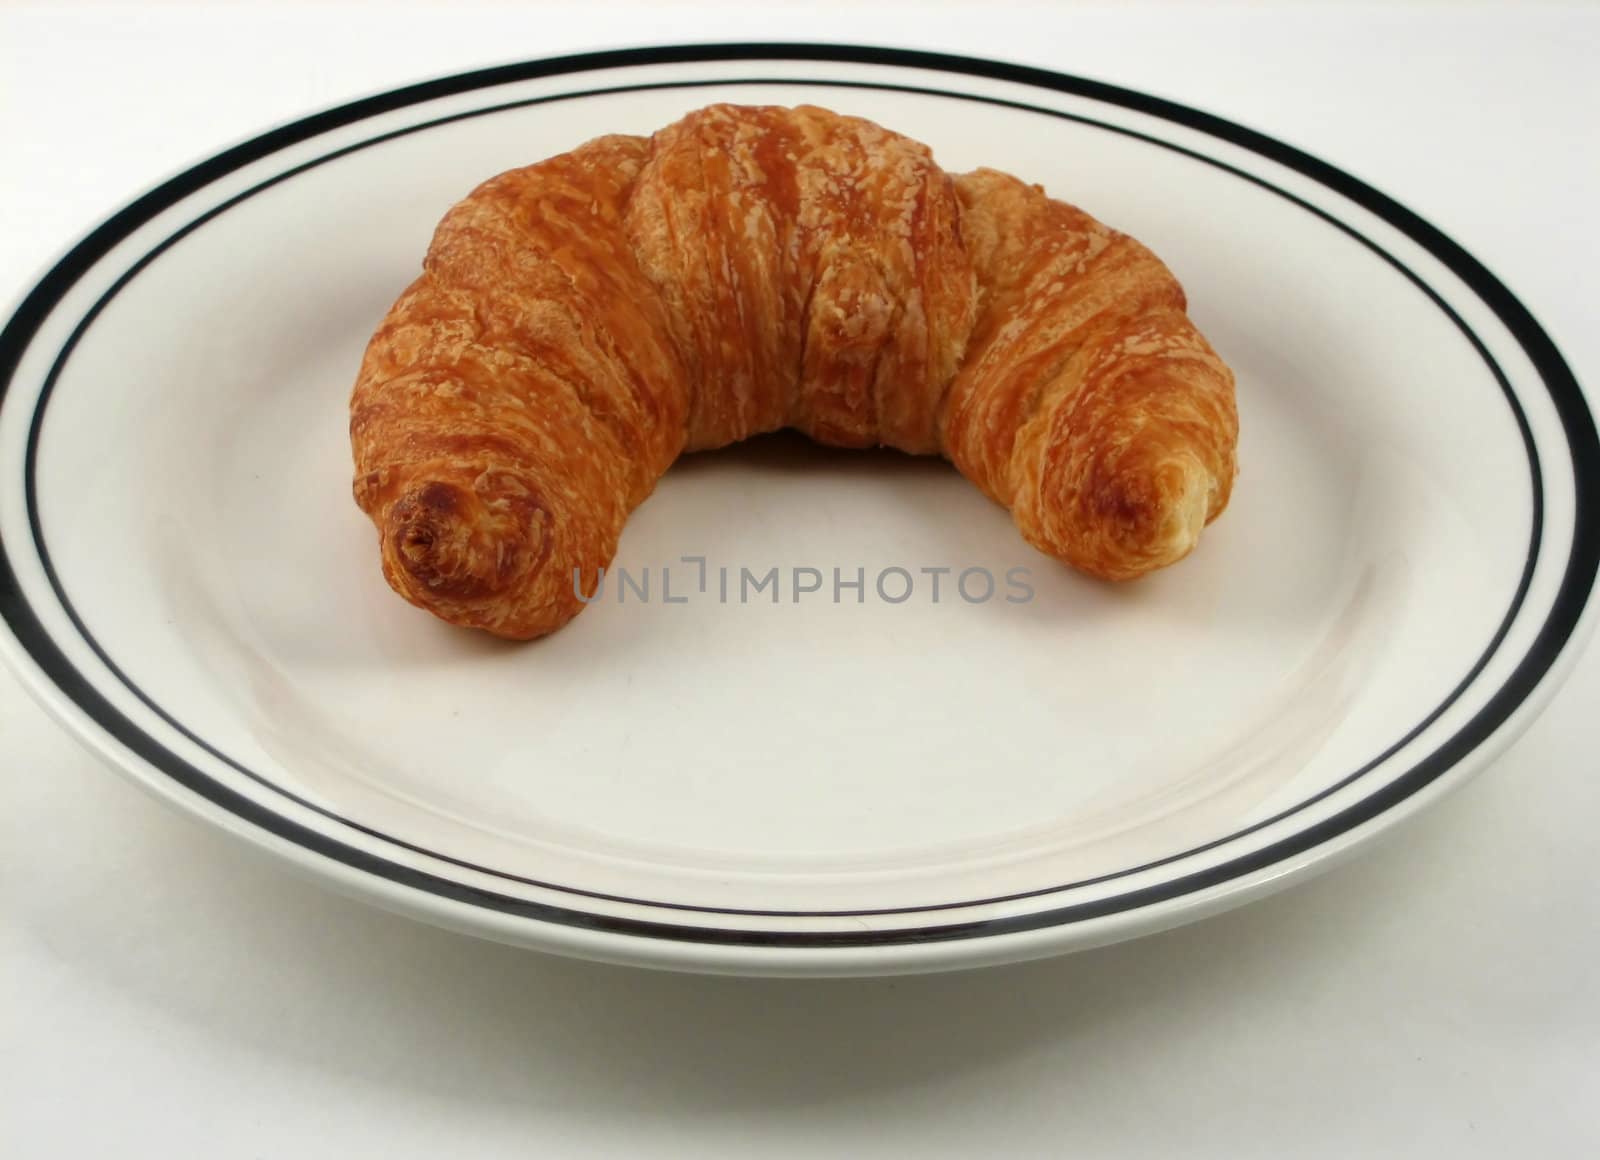 Croissants by albln